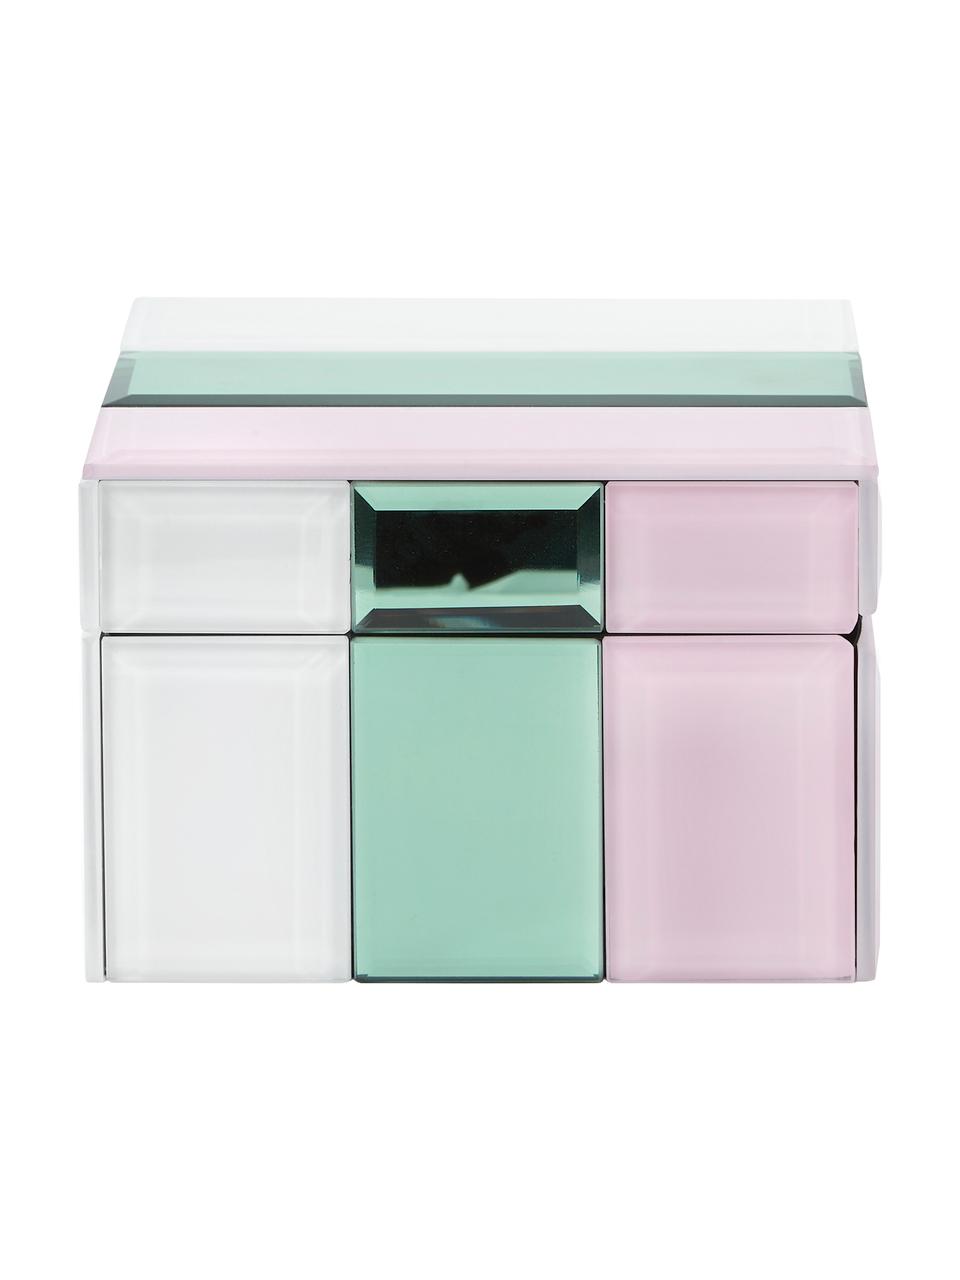 Schmuckbox Pastel aus Glas, Box: Mitteldichte Holzfaserpla, Weiss, Mint, Rosa, B 13 x H 9 cm